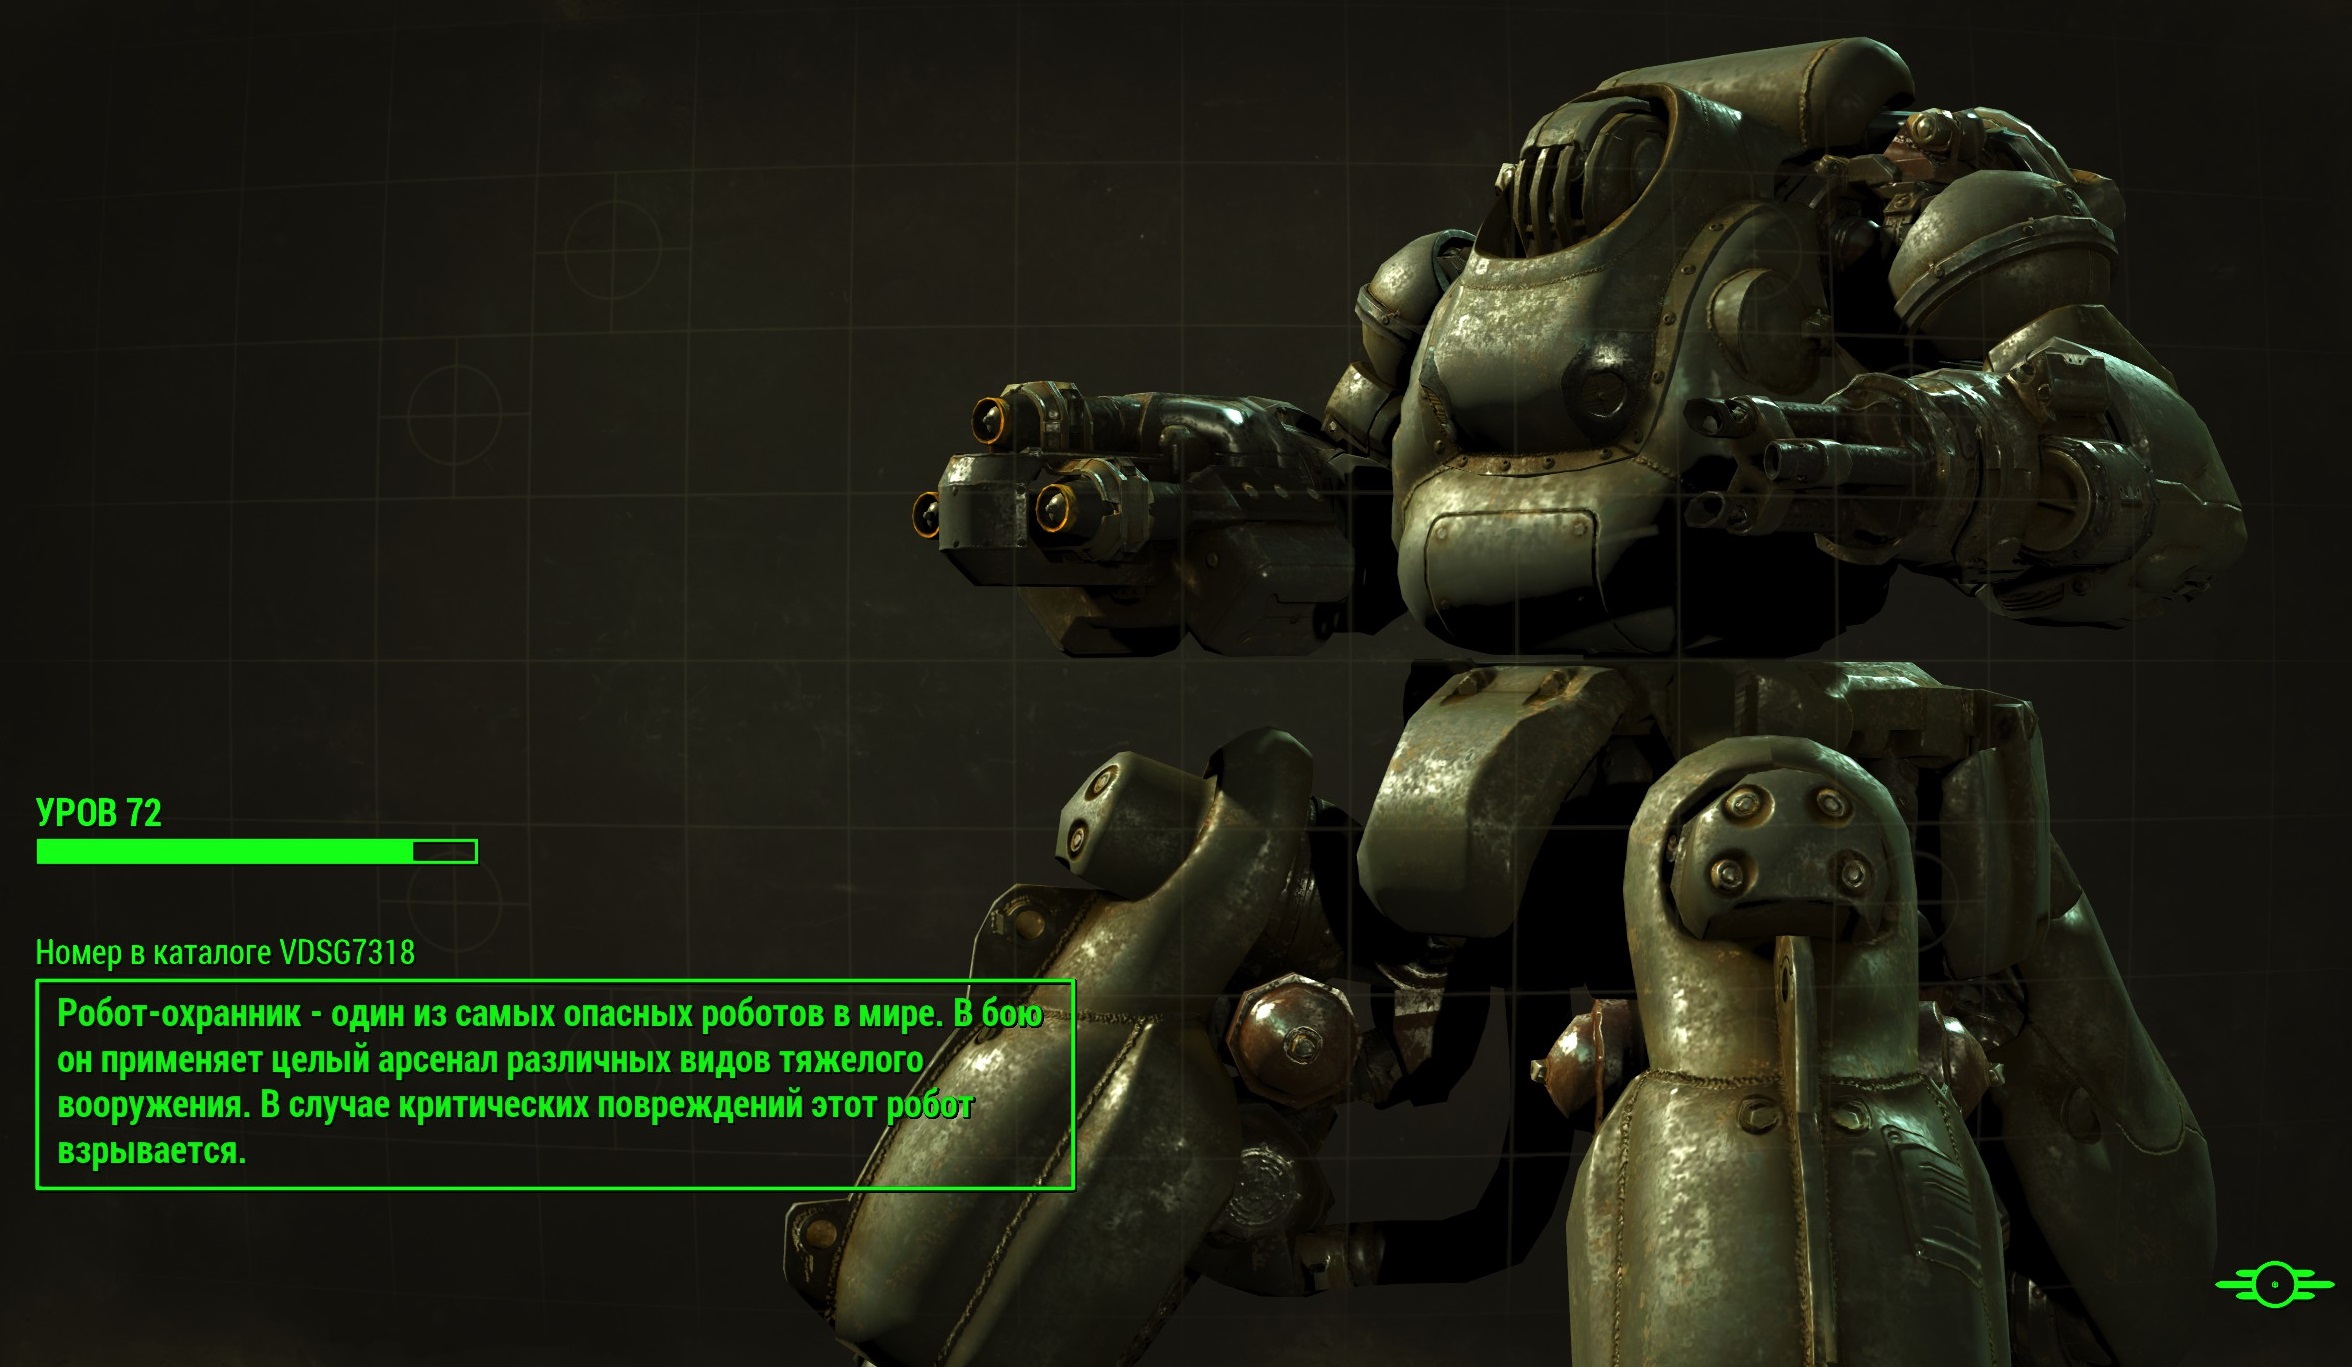 прототип робота охранника fallout 4 (120) фото